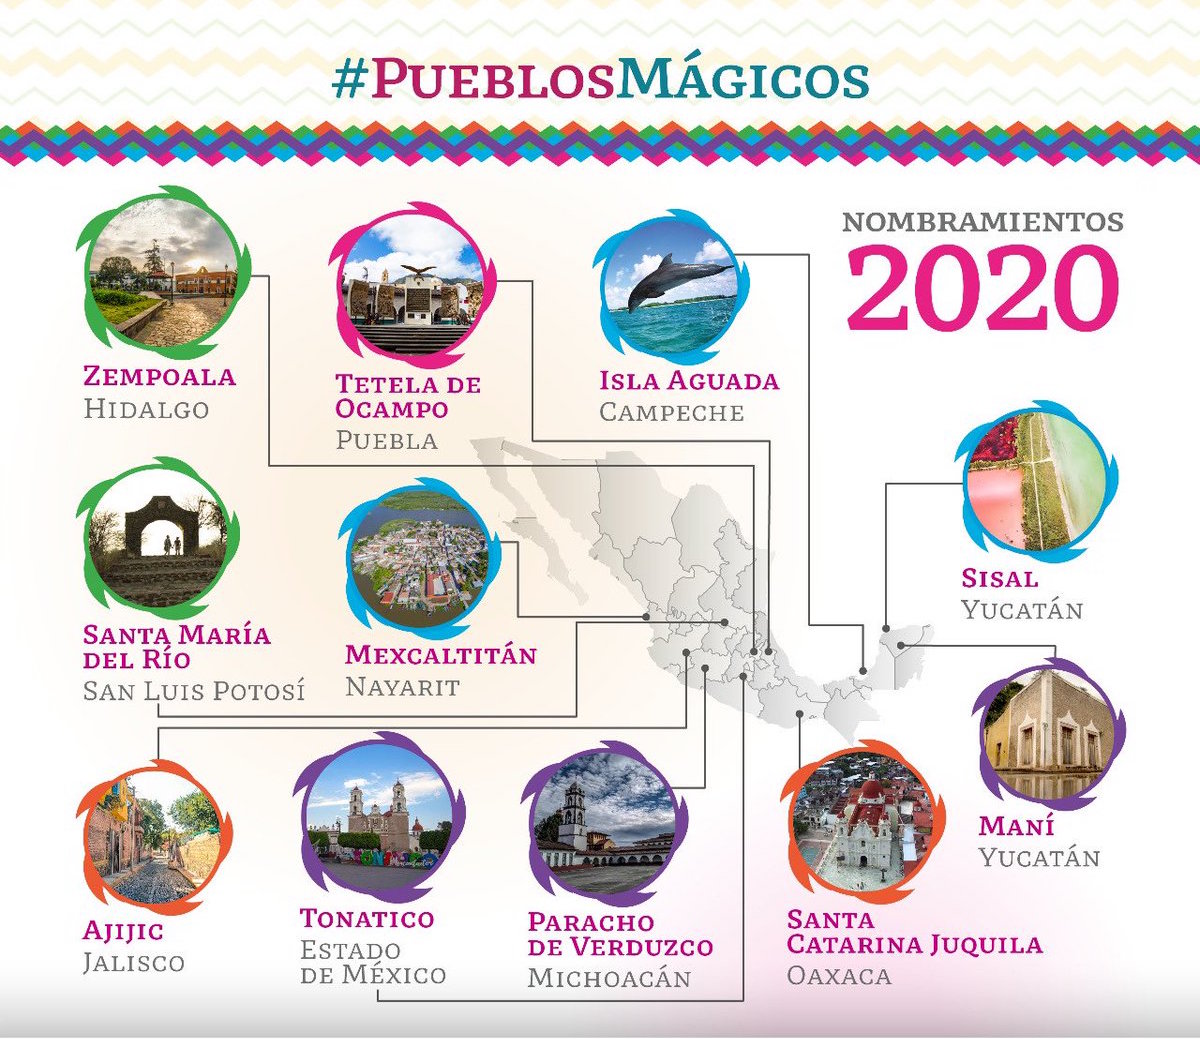 pueblos-magicos-lista-2020